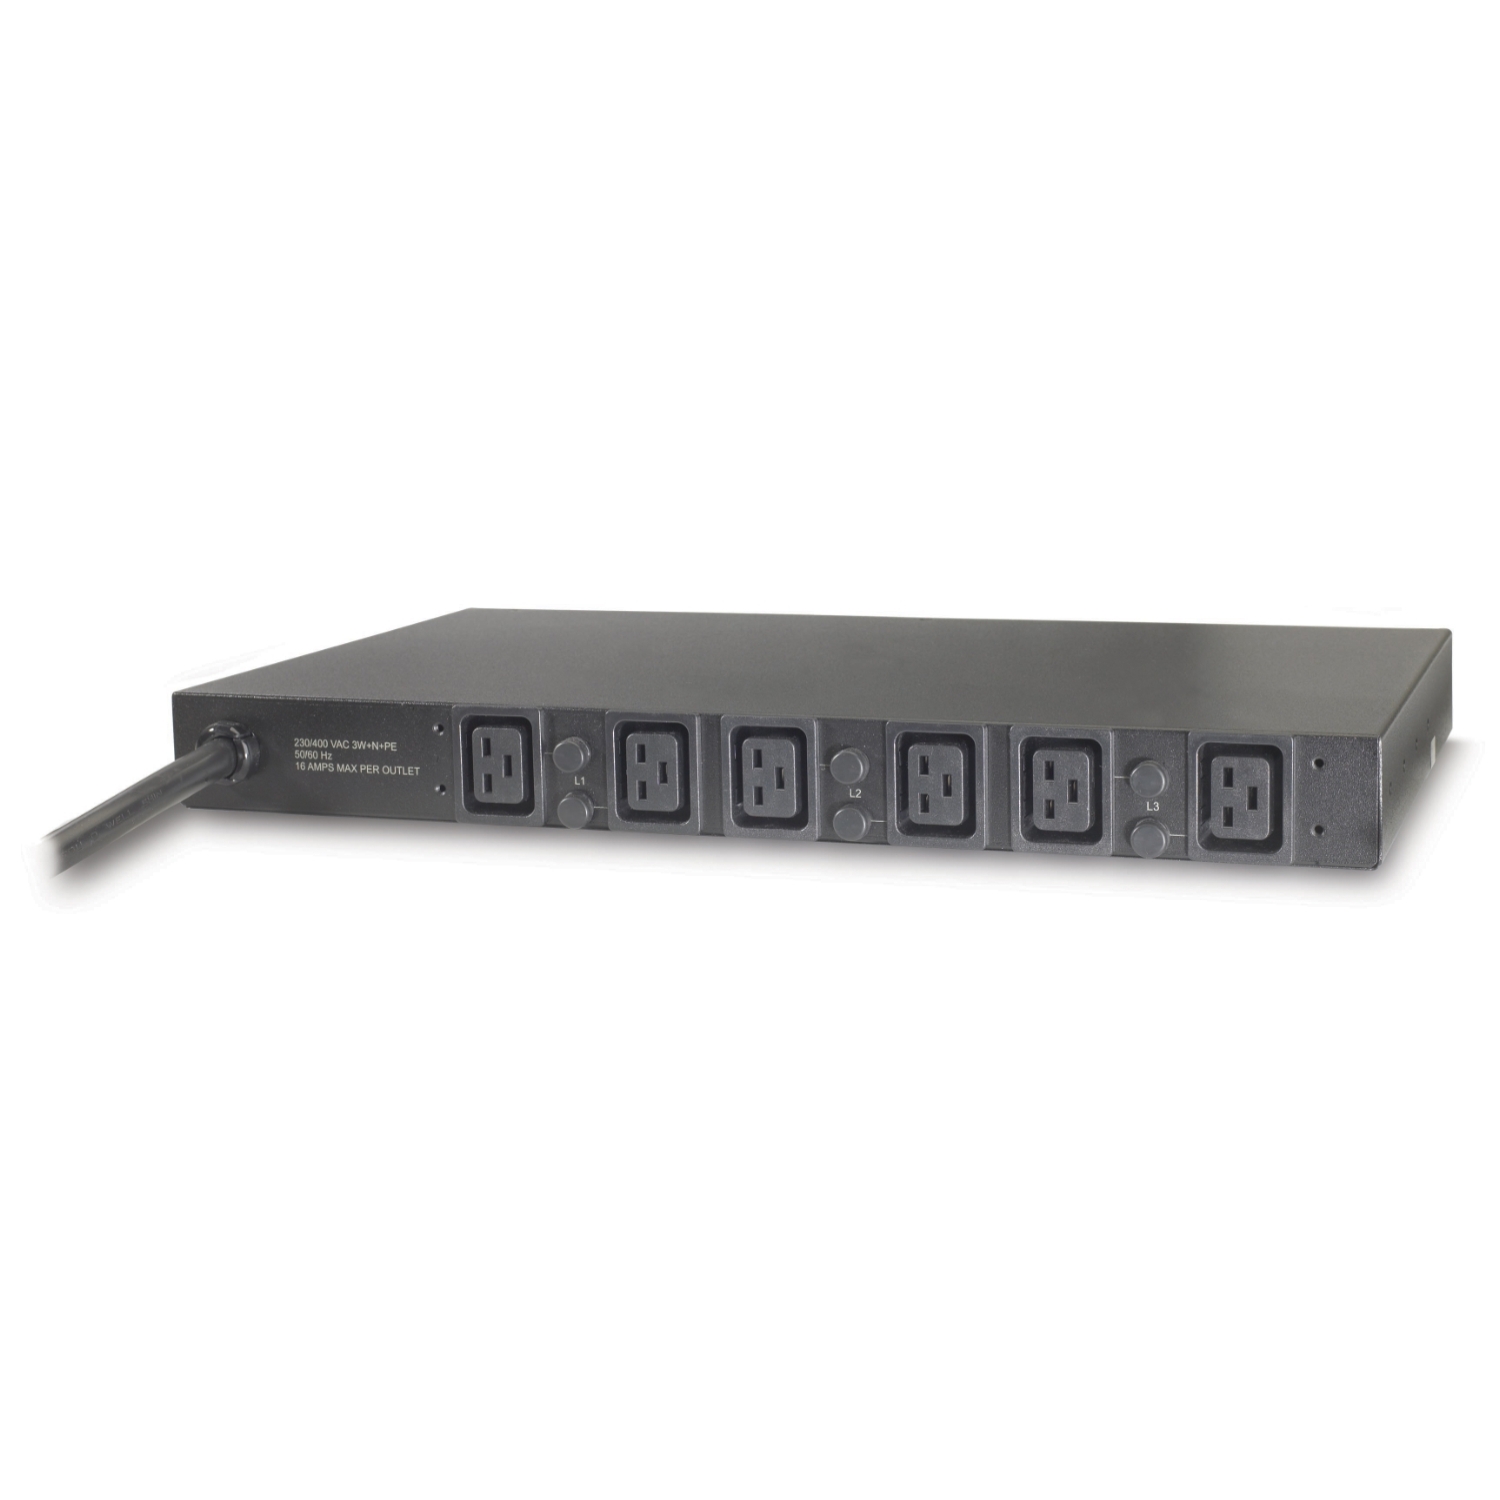 施耐德 APC Rack PDU AP7526 机架式机柜专用插座|电源分配单元 性能稳定 机架式安装 输入32A